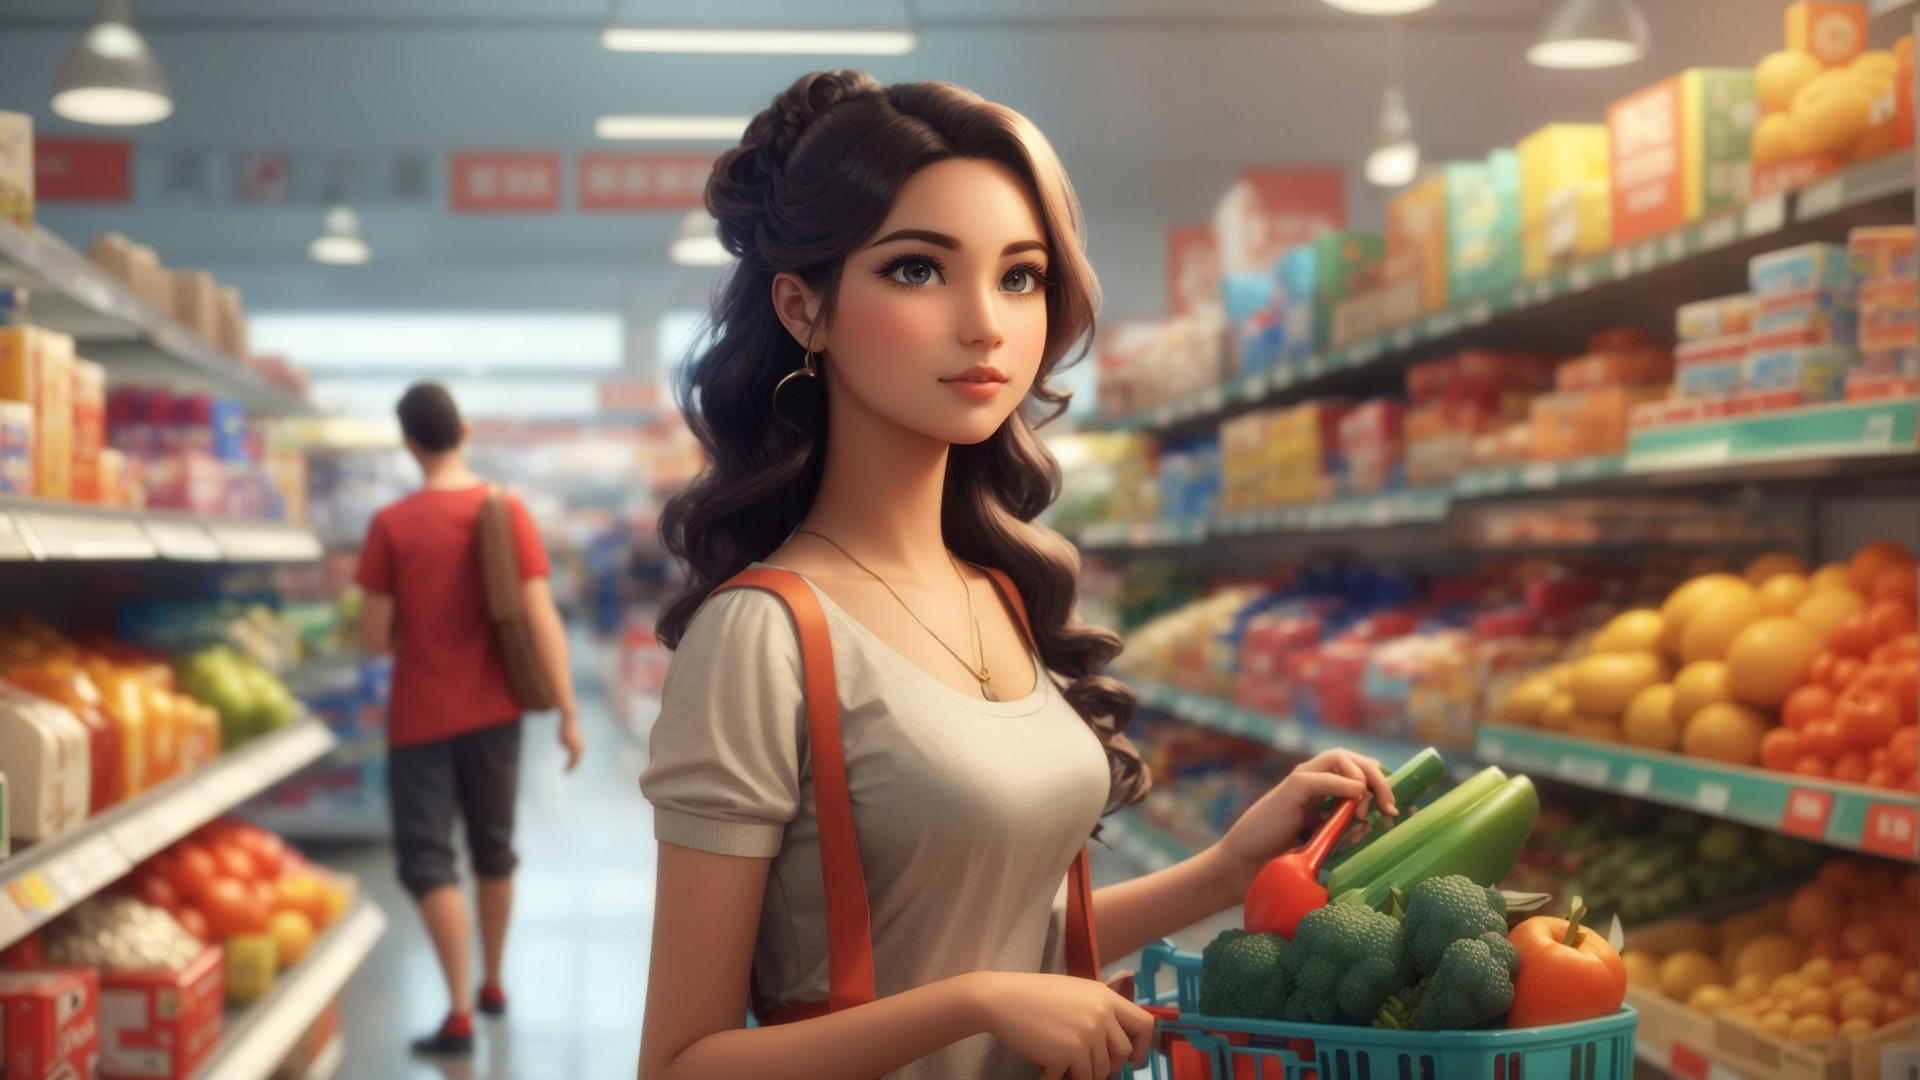 Screenshot 1 of Supermercado Loja Simulador 3D 1.4